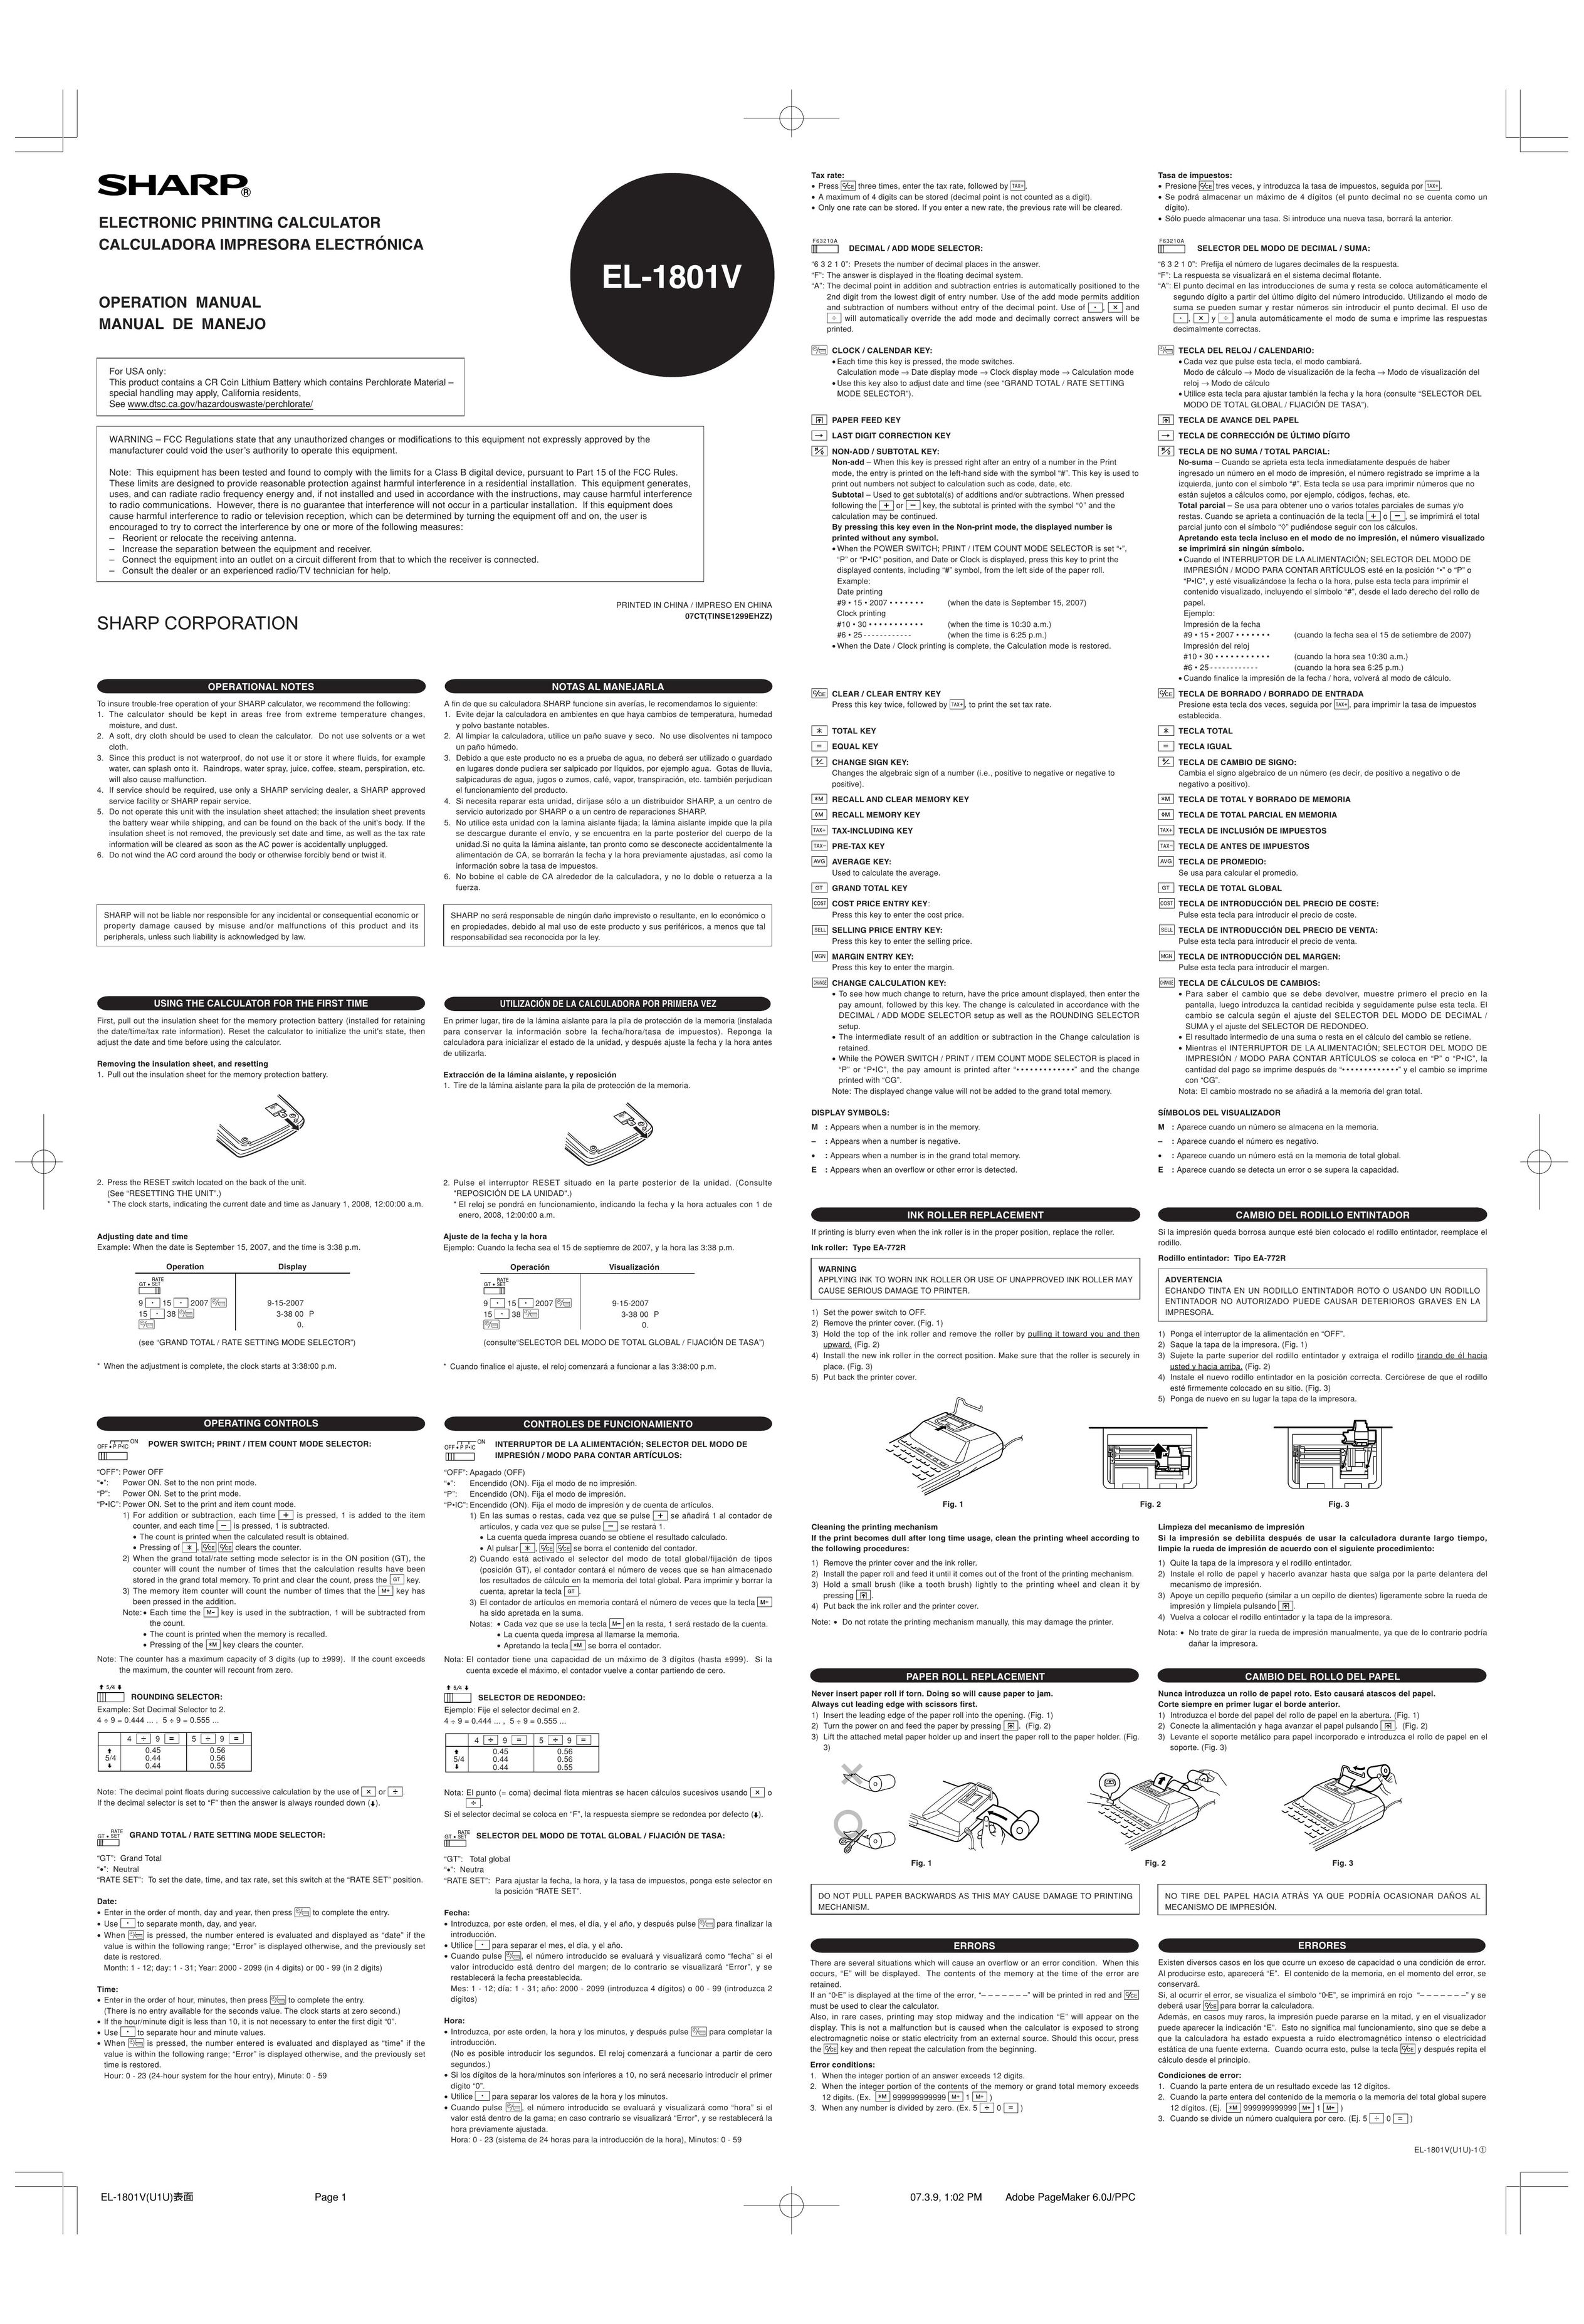 Sharp EL-1801V Calculator User Manual